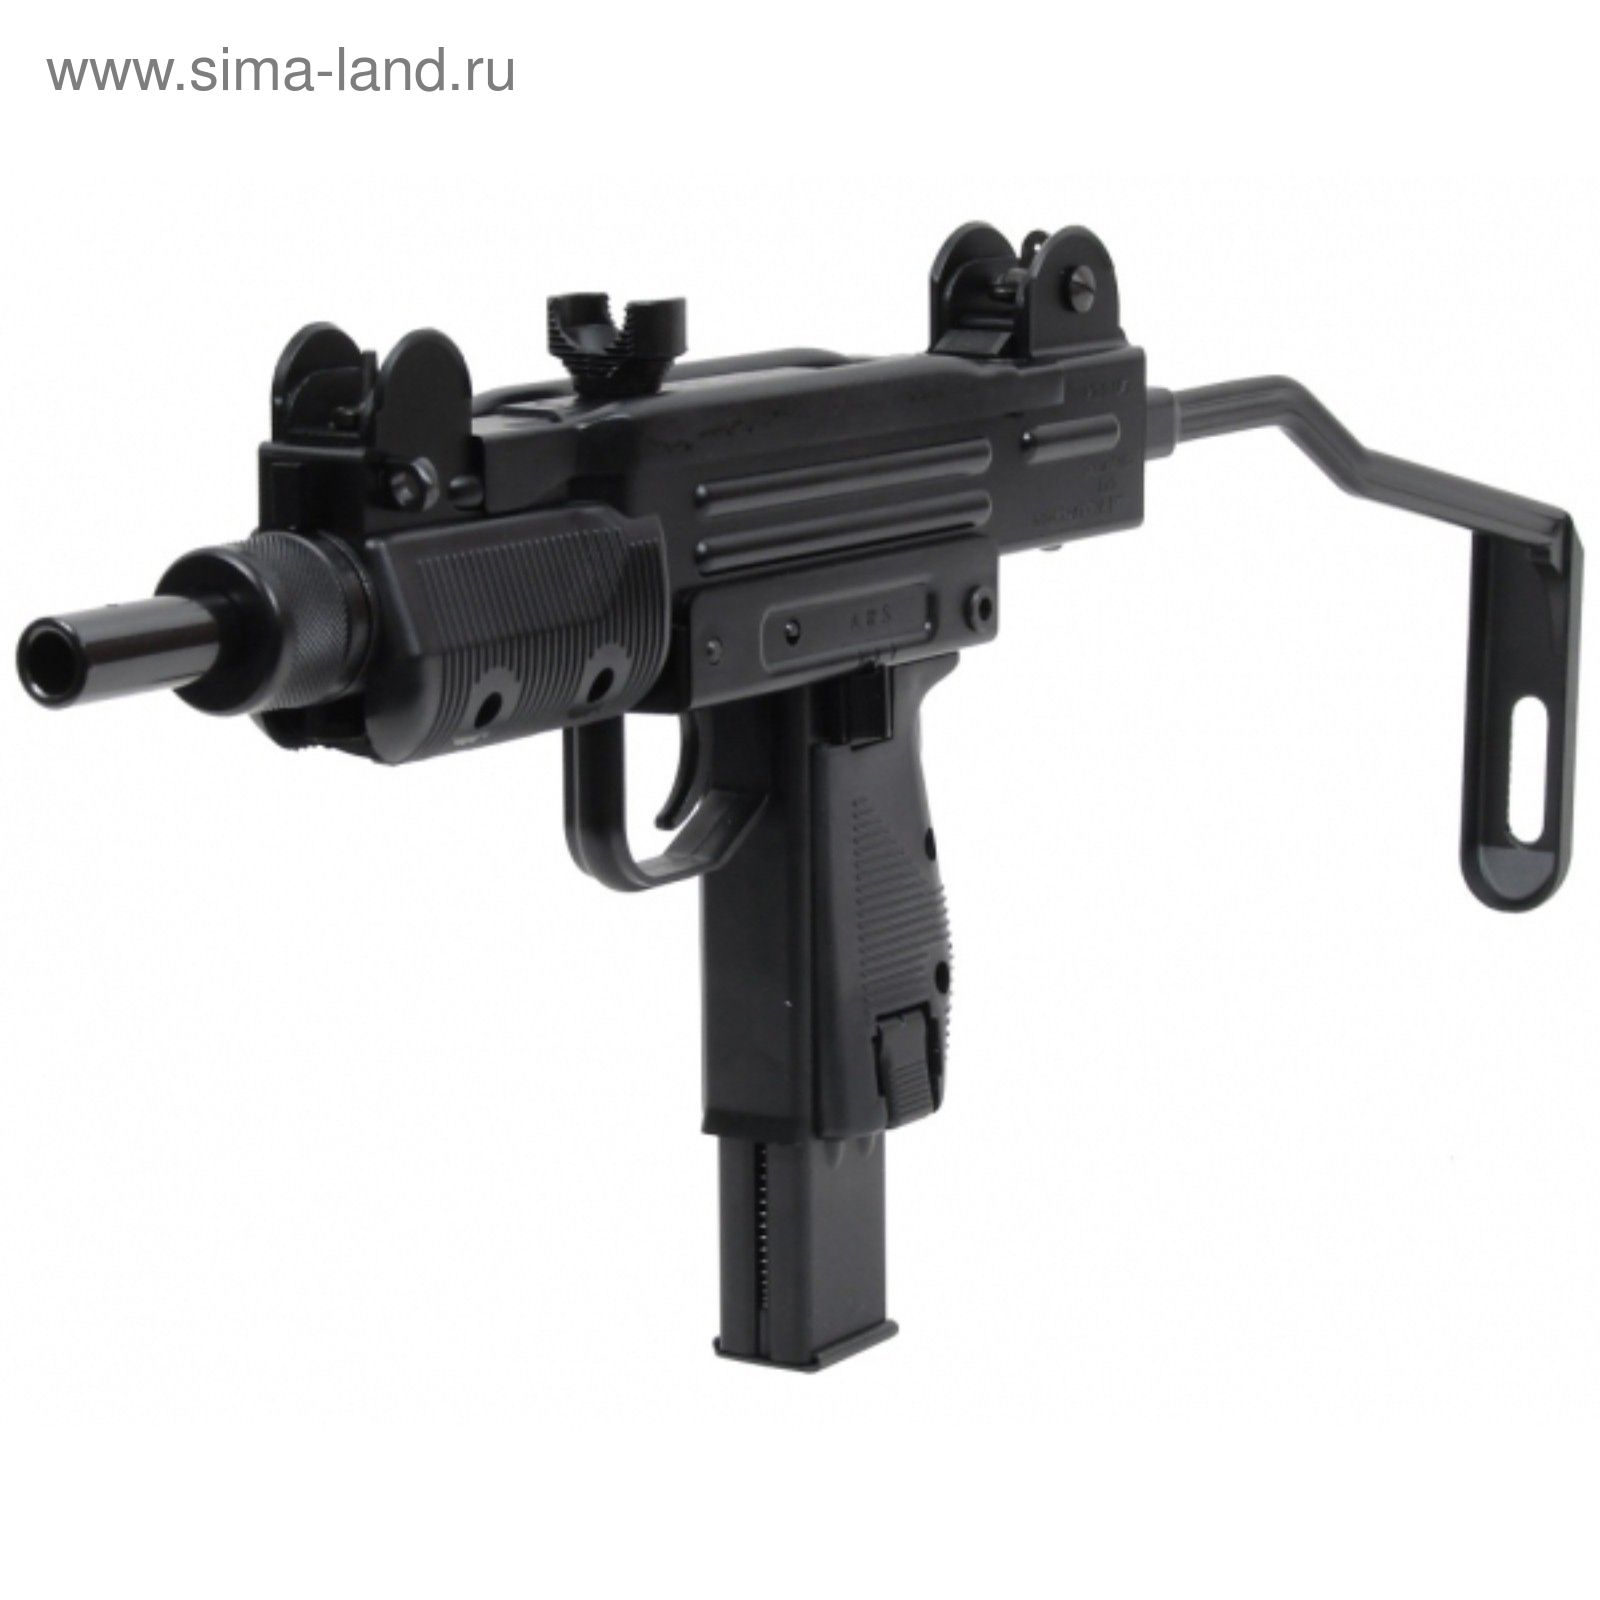 Пистолет пневматический Swiss Arms Protector (MINI UZI), к.4,5 мм, автоматический режим стрельбы, ме